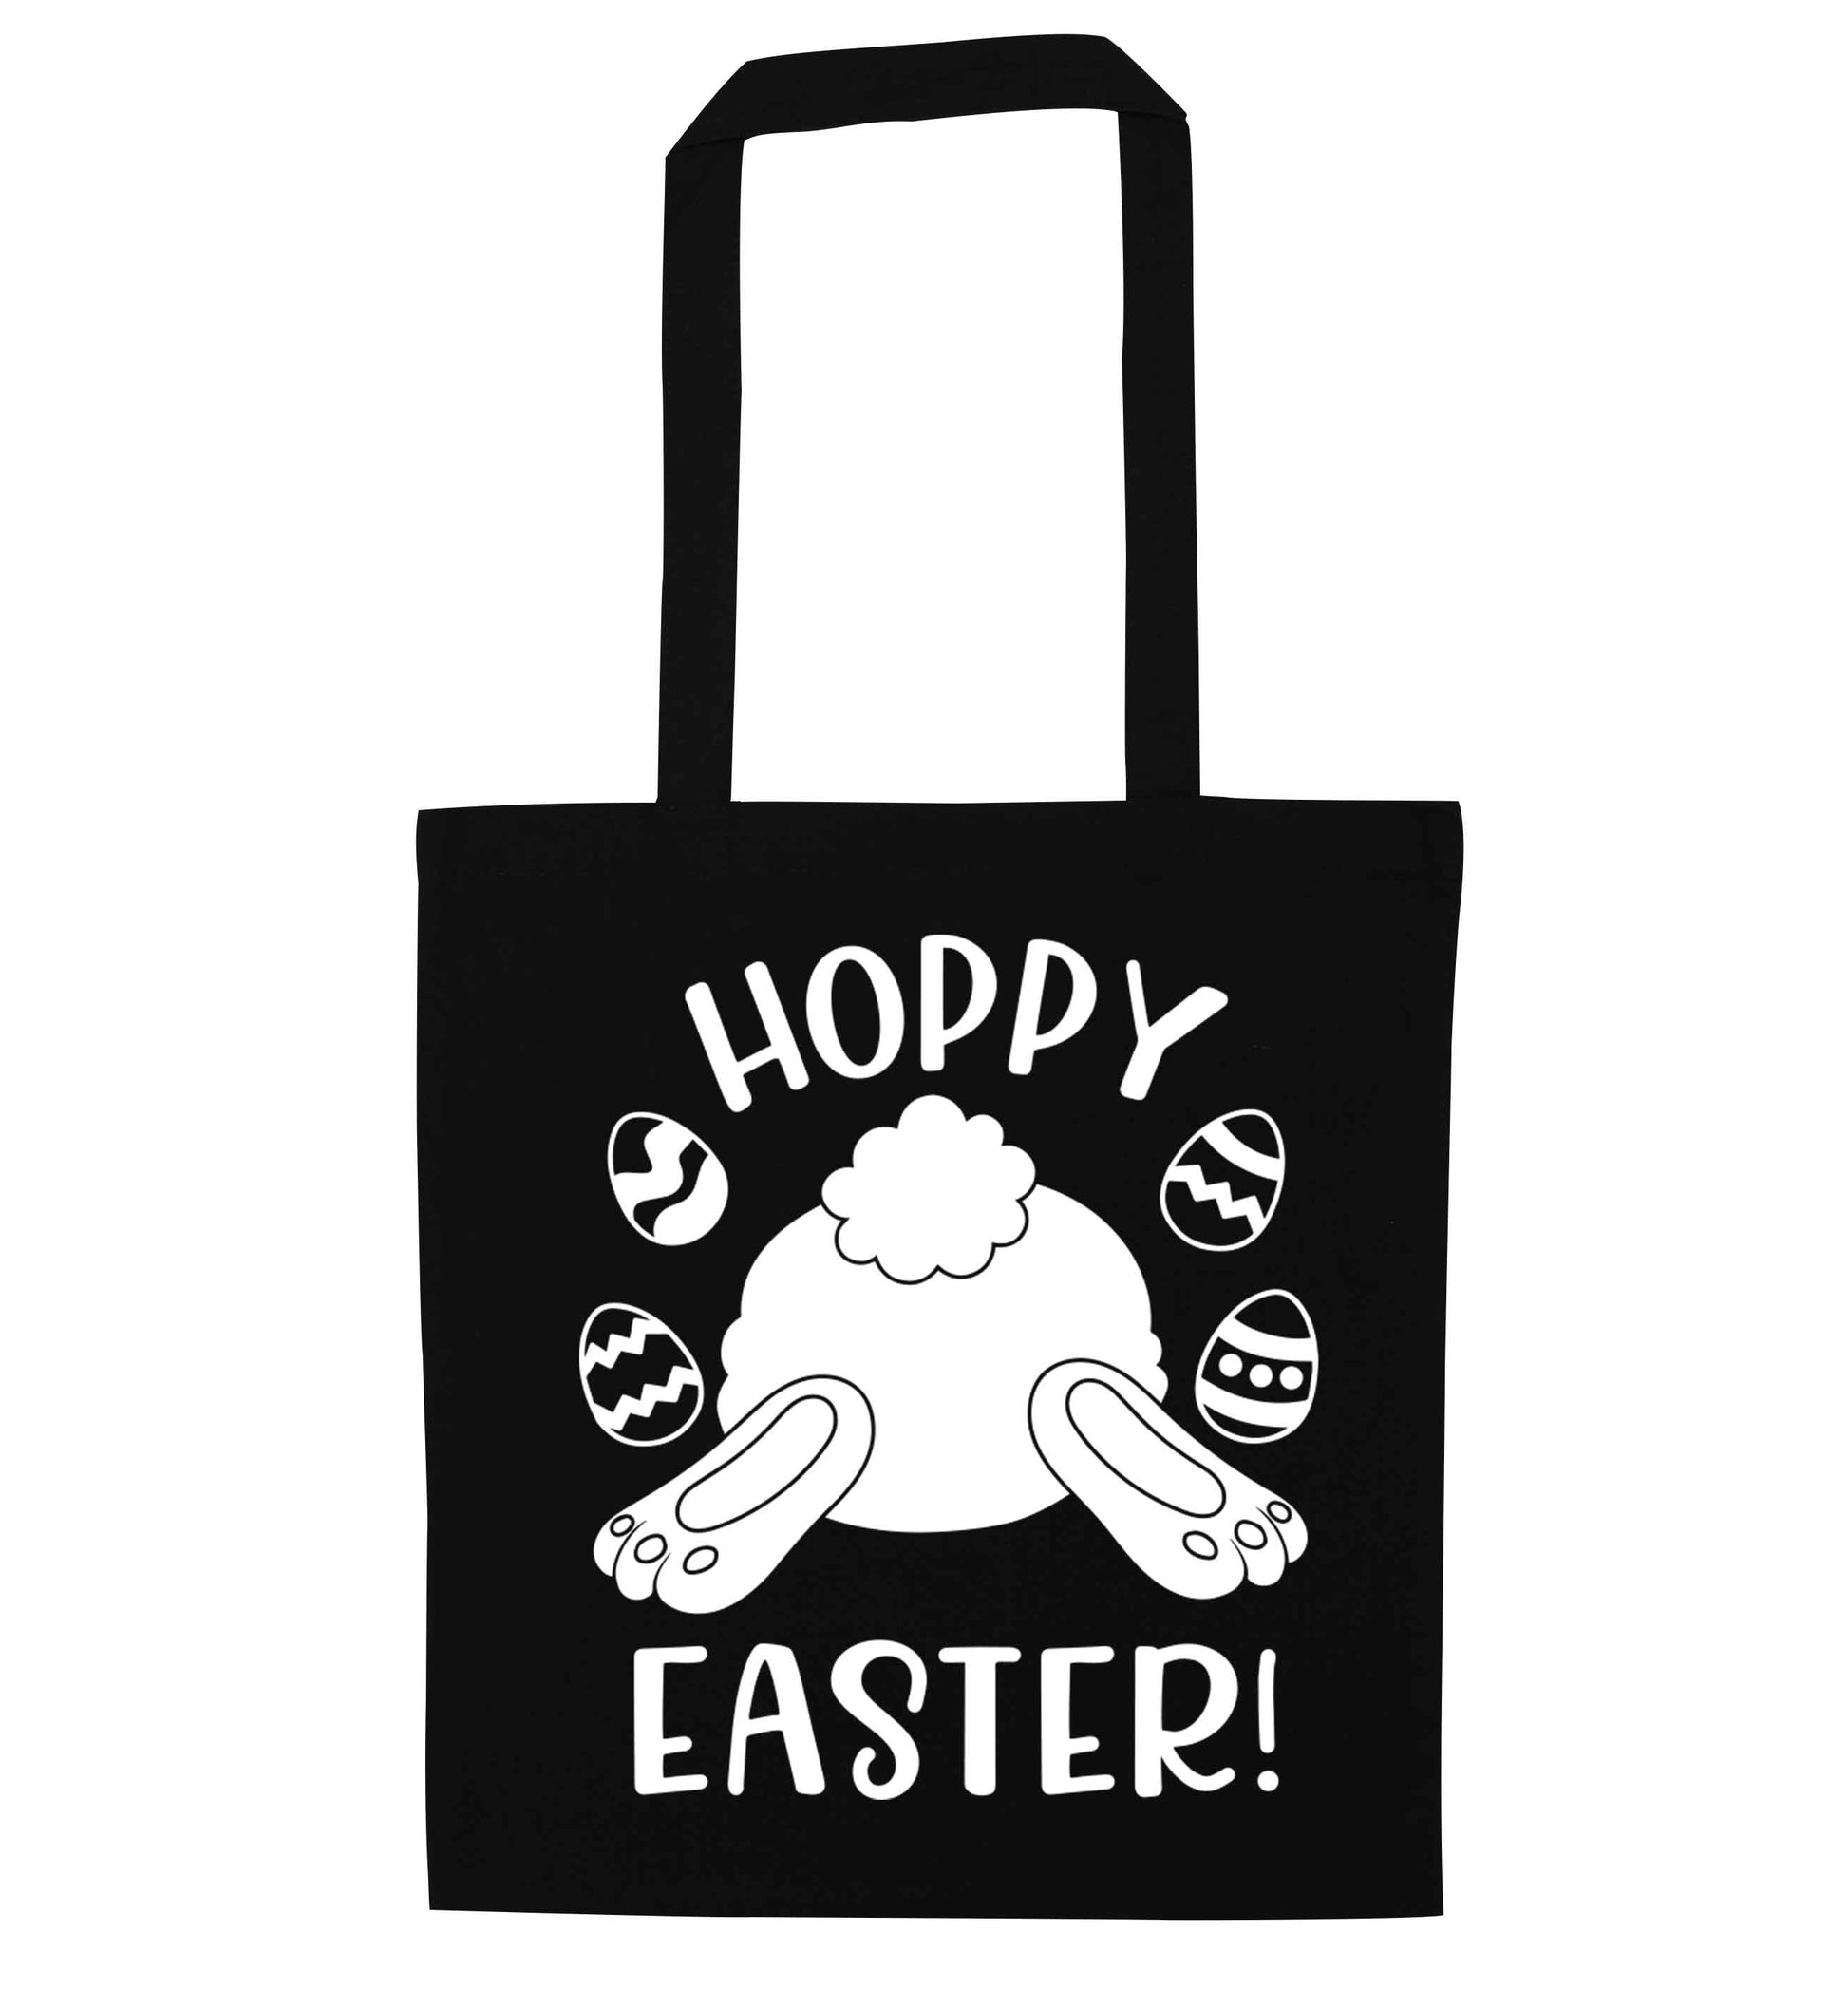 Hoppy Easter black tote bag